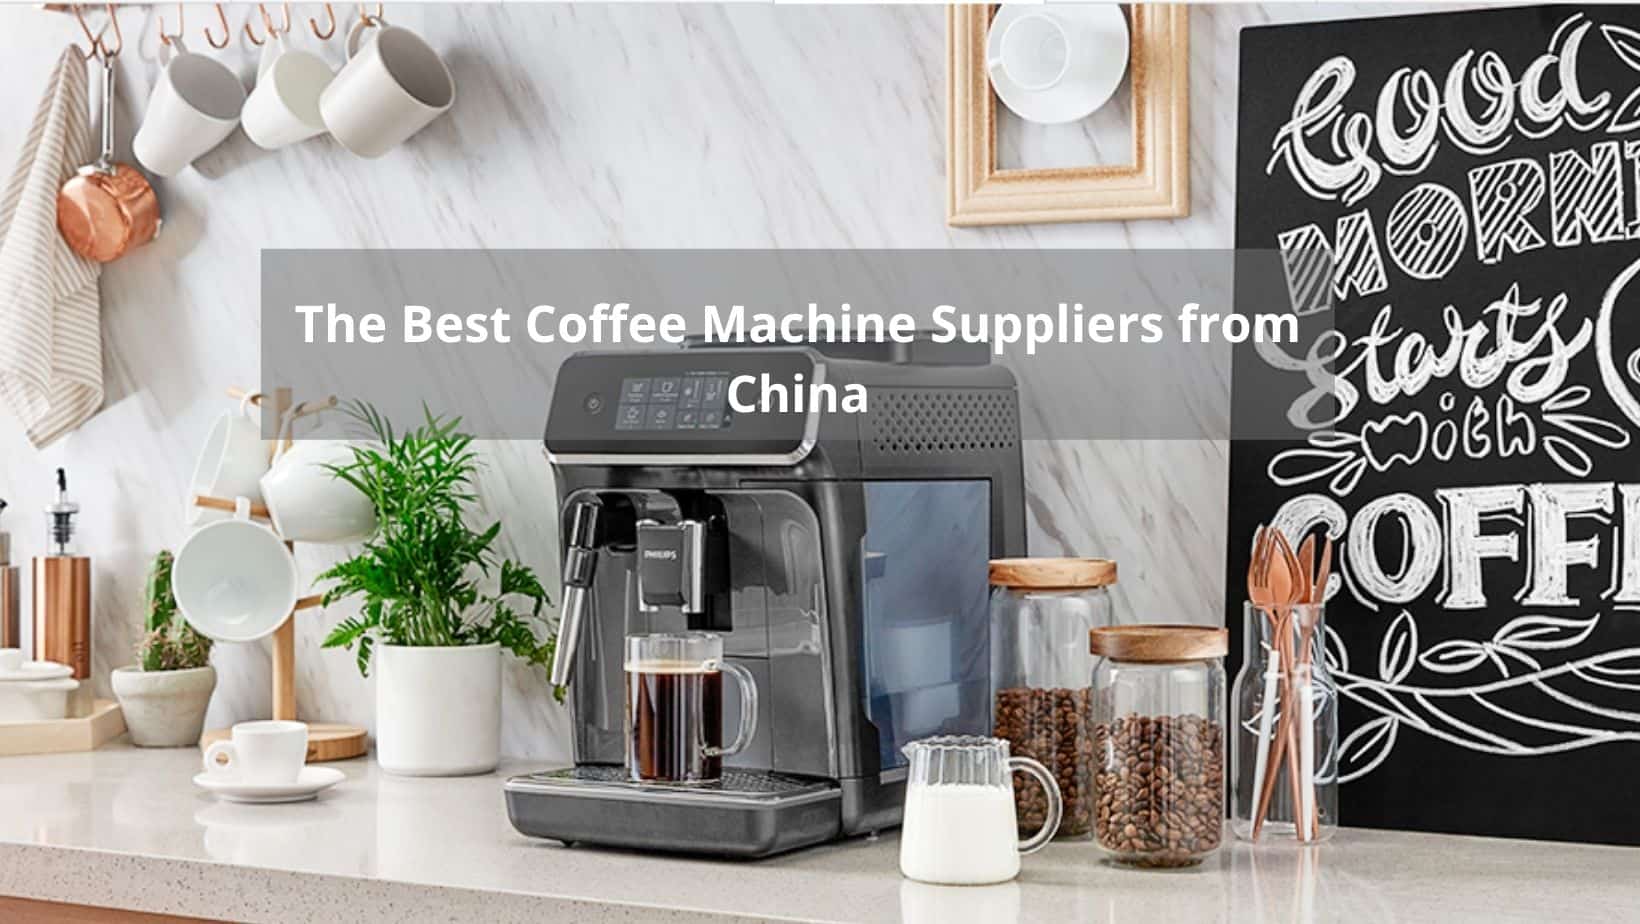 https://leizintl.com/wp-content/uploads/2021/10/The-best-coffee-machine-supplier.jpg